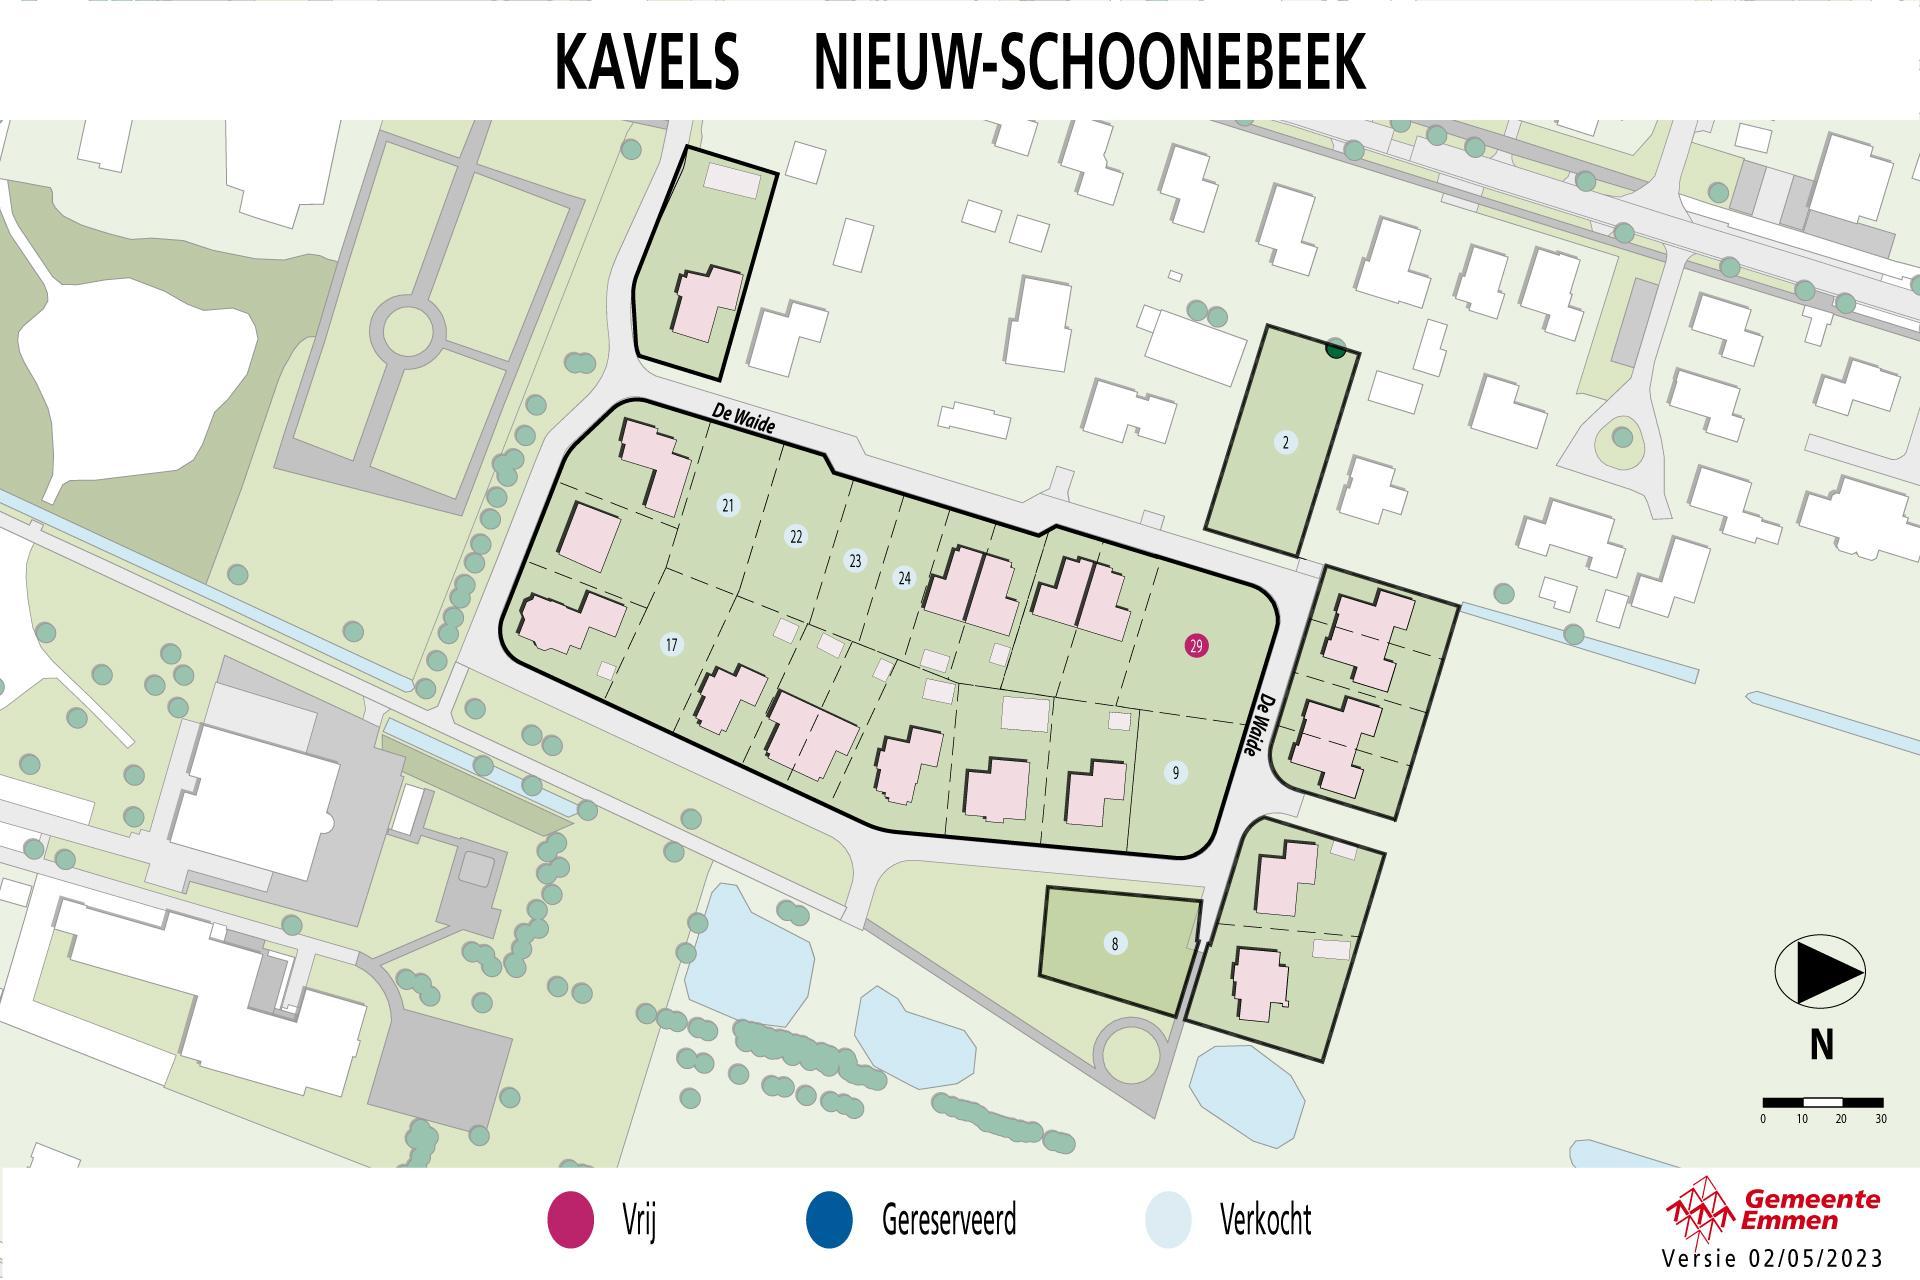 Kaart met kavels in Nieuw-Schoonebeek